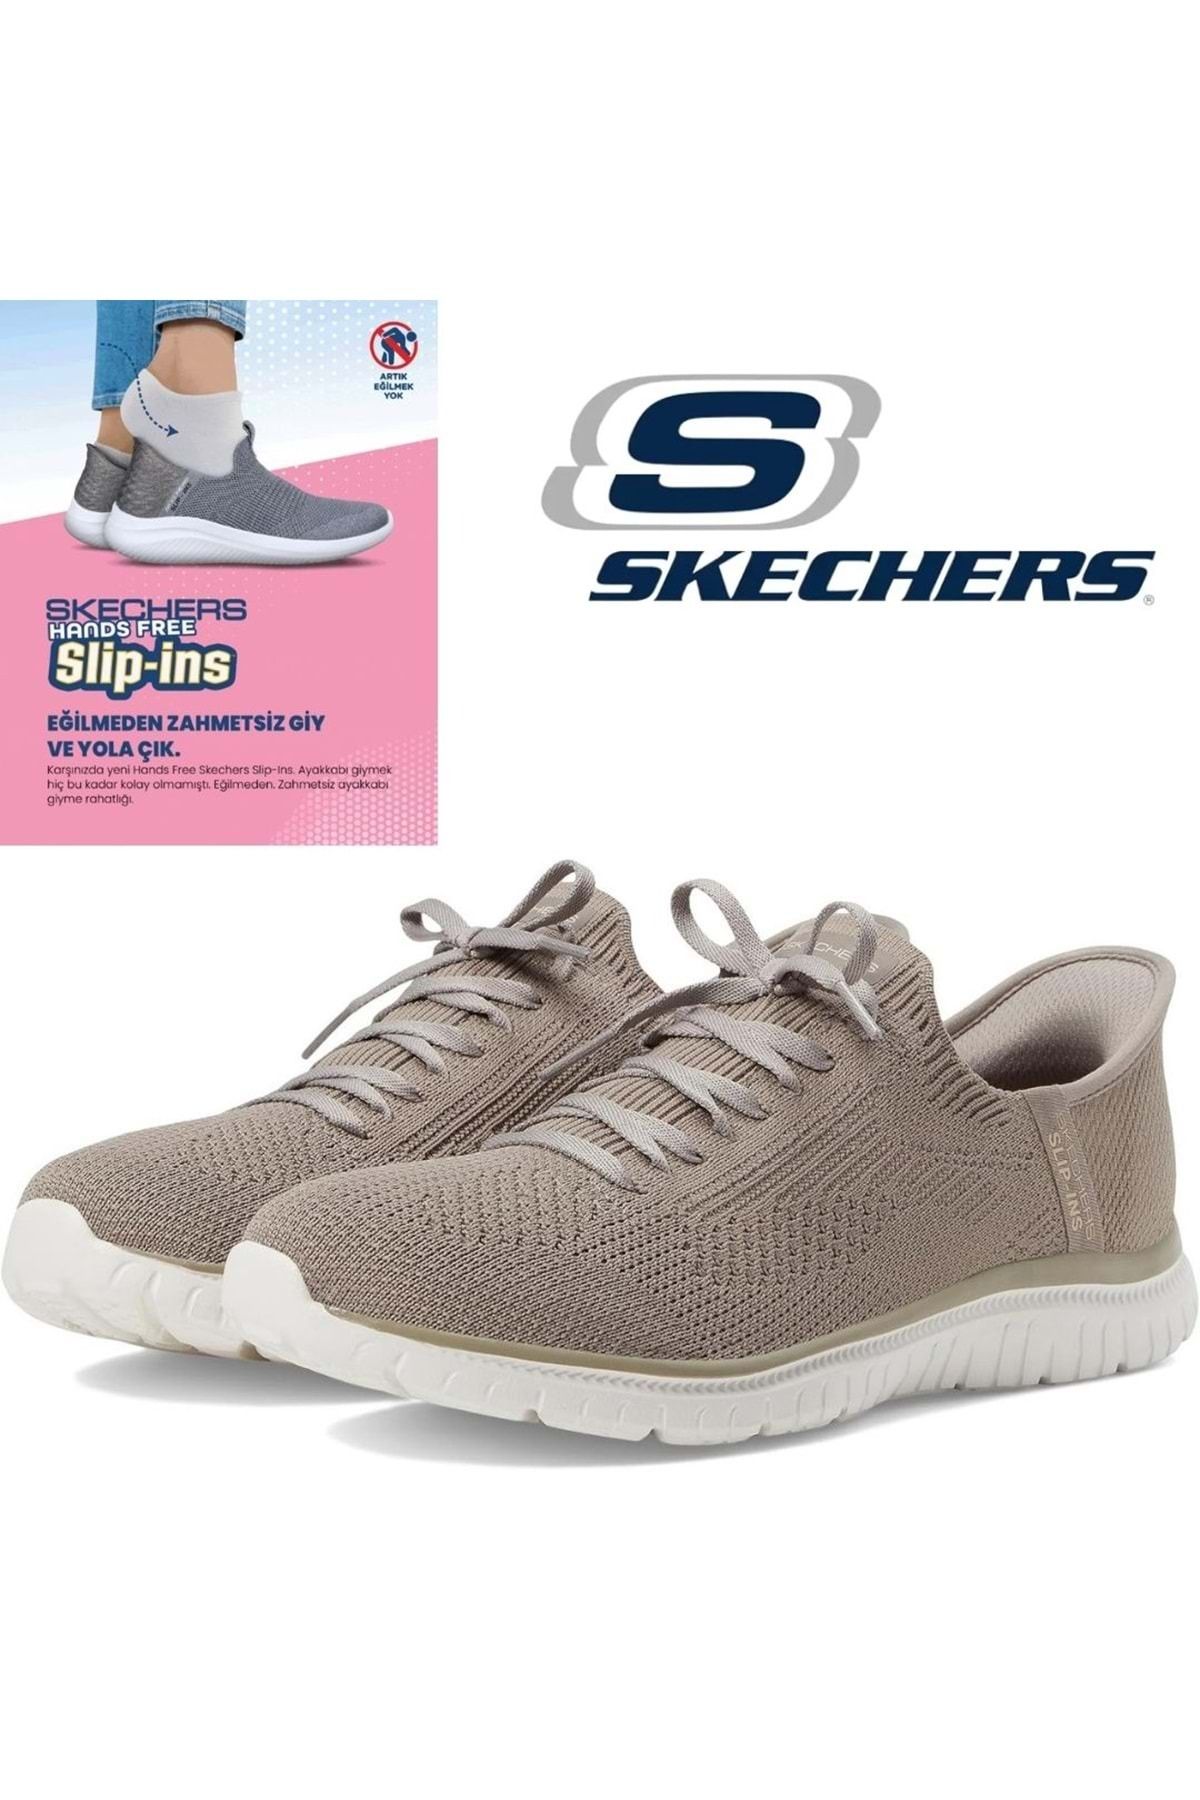 Skechers Virtue Divinity 104421 Slip-ins Günlük Kadın Spor Ayakkabı Bej